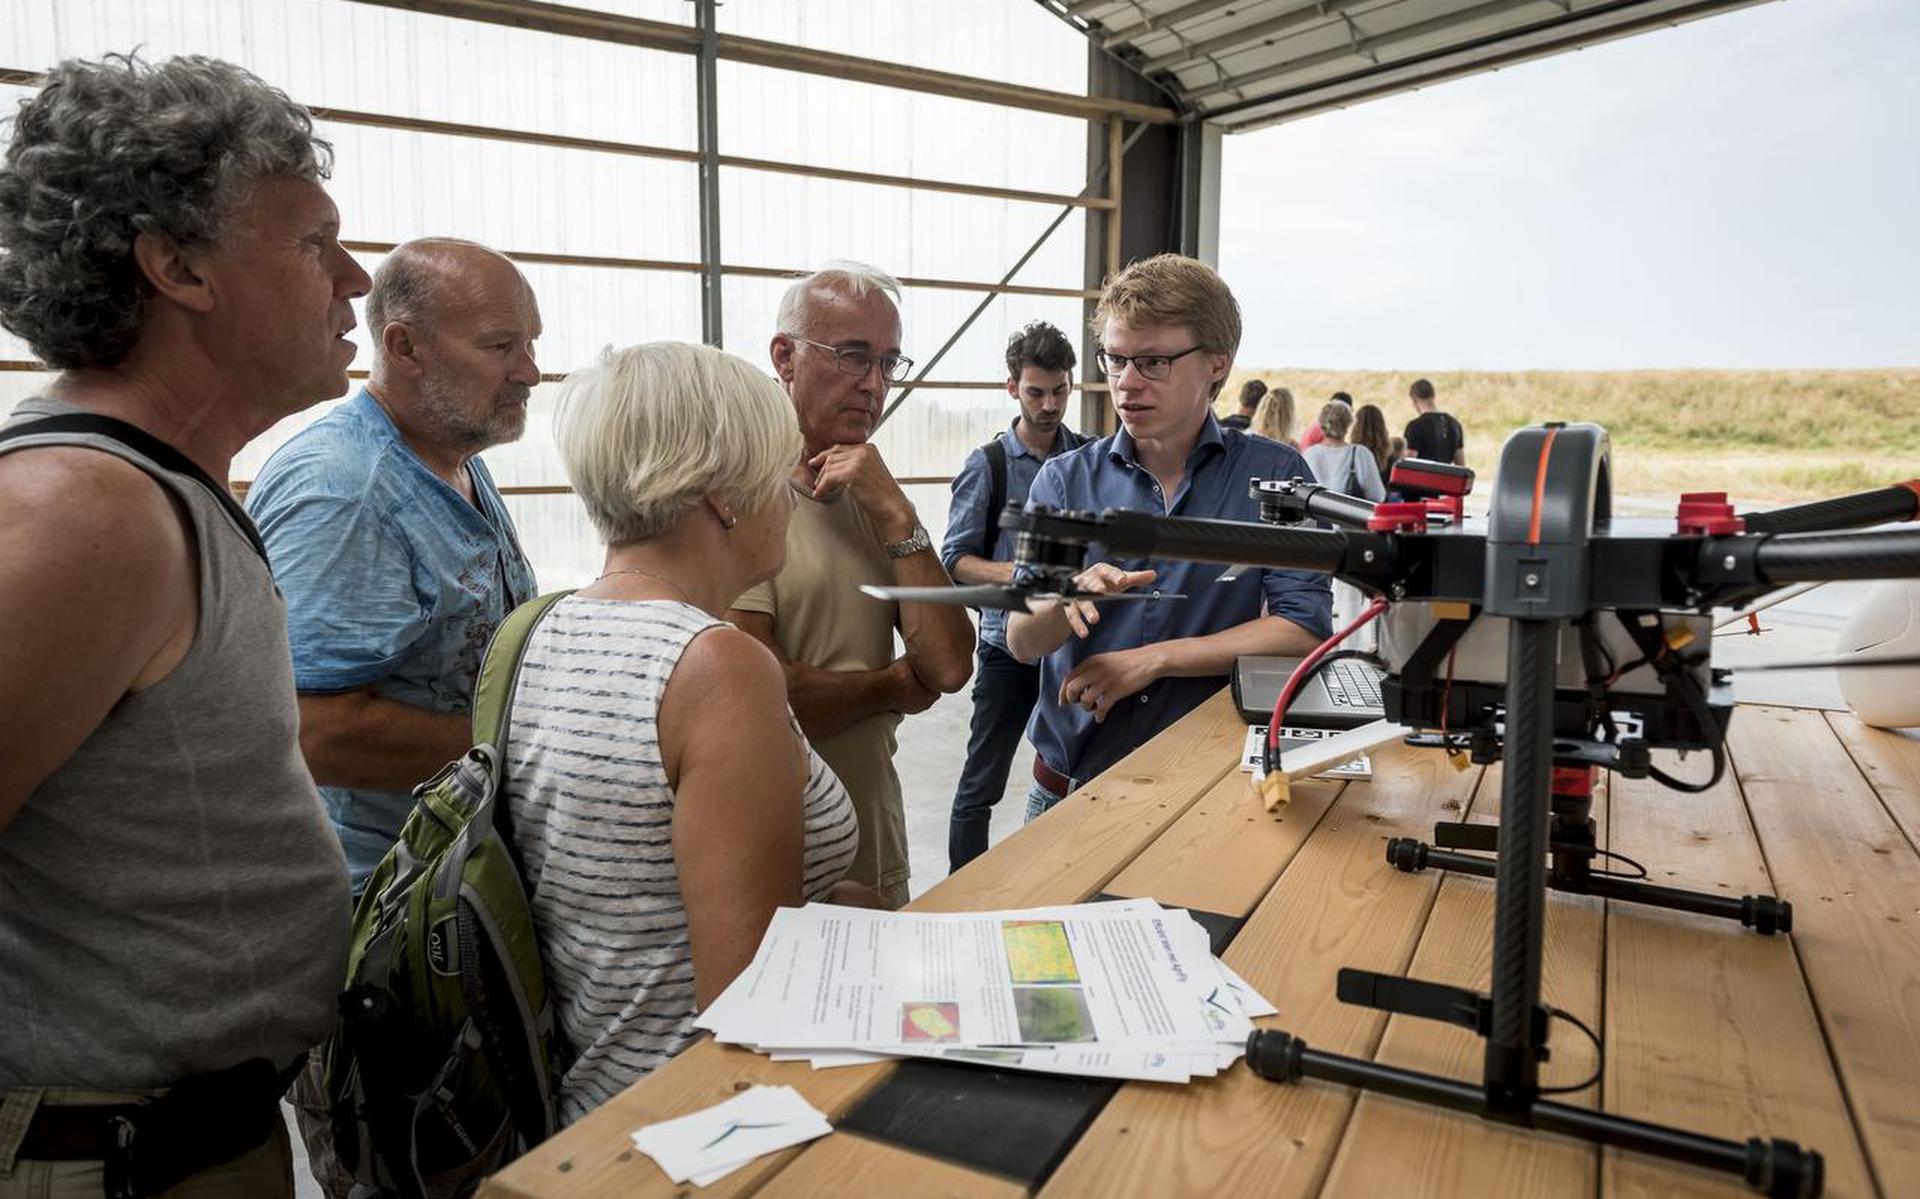 Wilco Stollenga van Agrifly geeft uitleg over het gebruik van drones in de landbouw op de boerderij van Geert Jan Duisterwinkel in Vierhuizen. Foto Geert Job Sevink